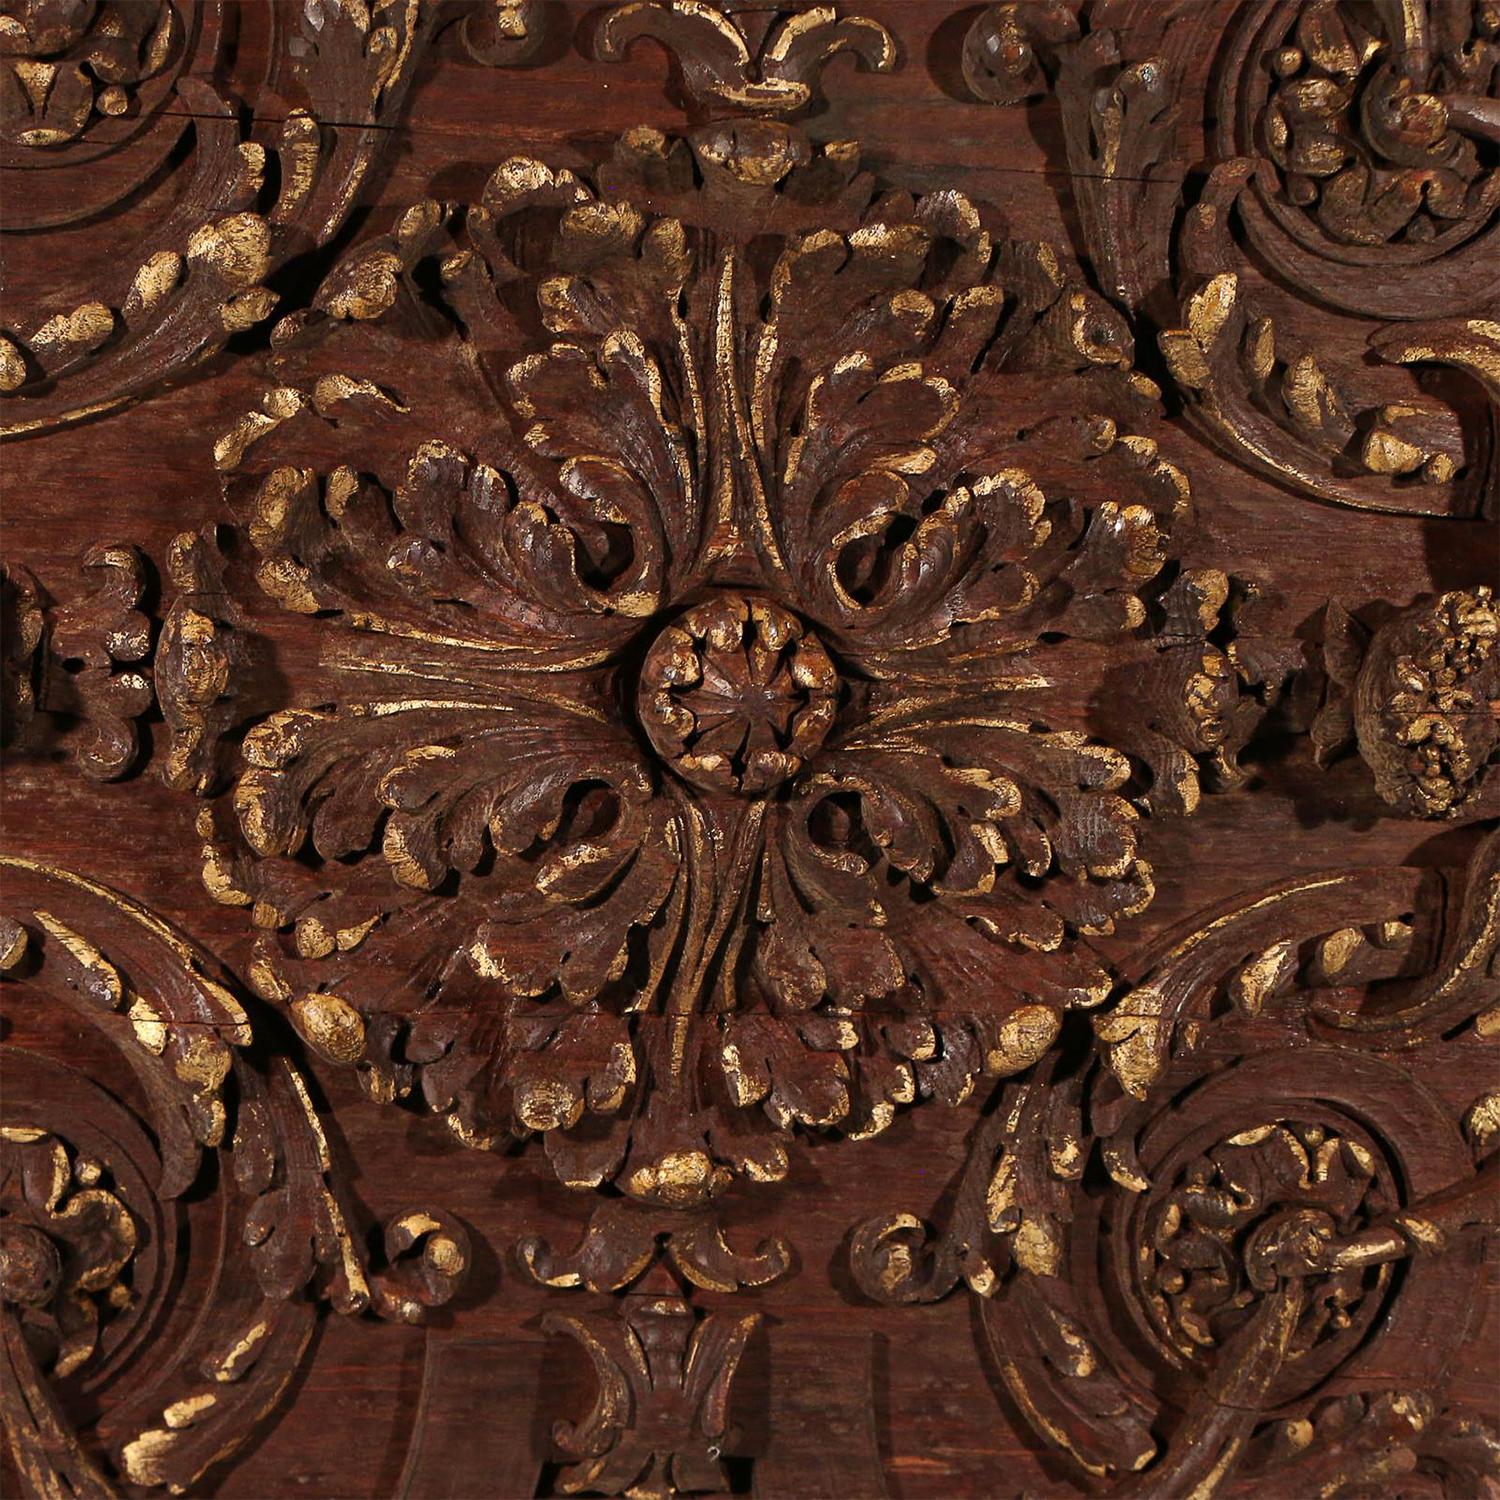 Ein großes dunkelbraunes italienisches Deckenpaneel aus handgeschnitztem Nussbaumholz, verziert mit Karyatiden- und Akanthus-Rollen, in gutem Zustand. Das antike Wandrelief repräsentiert die Epoche des Rokoko. Alters- und gebrauchsbedingte